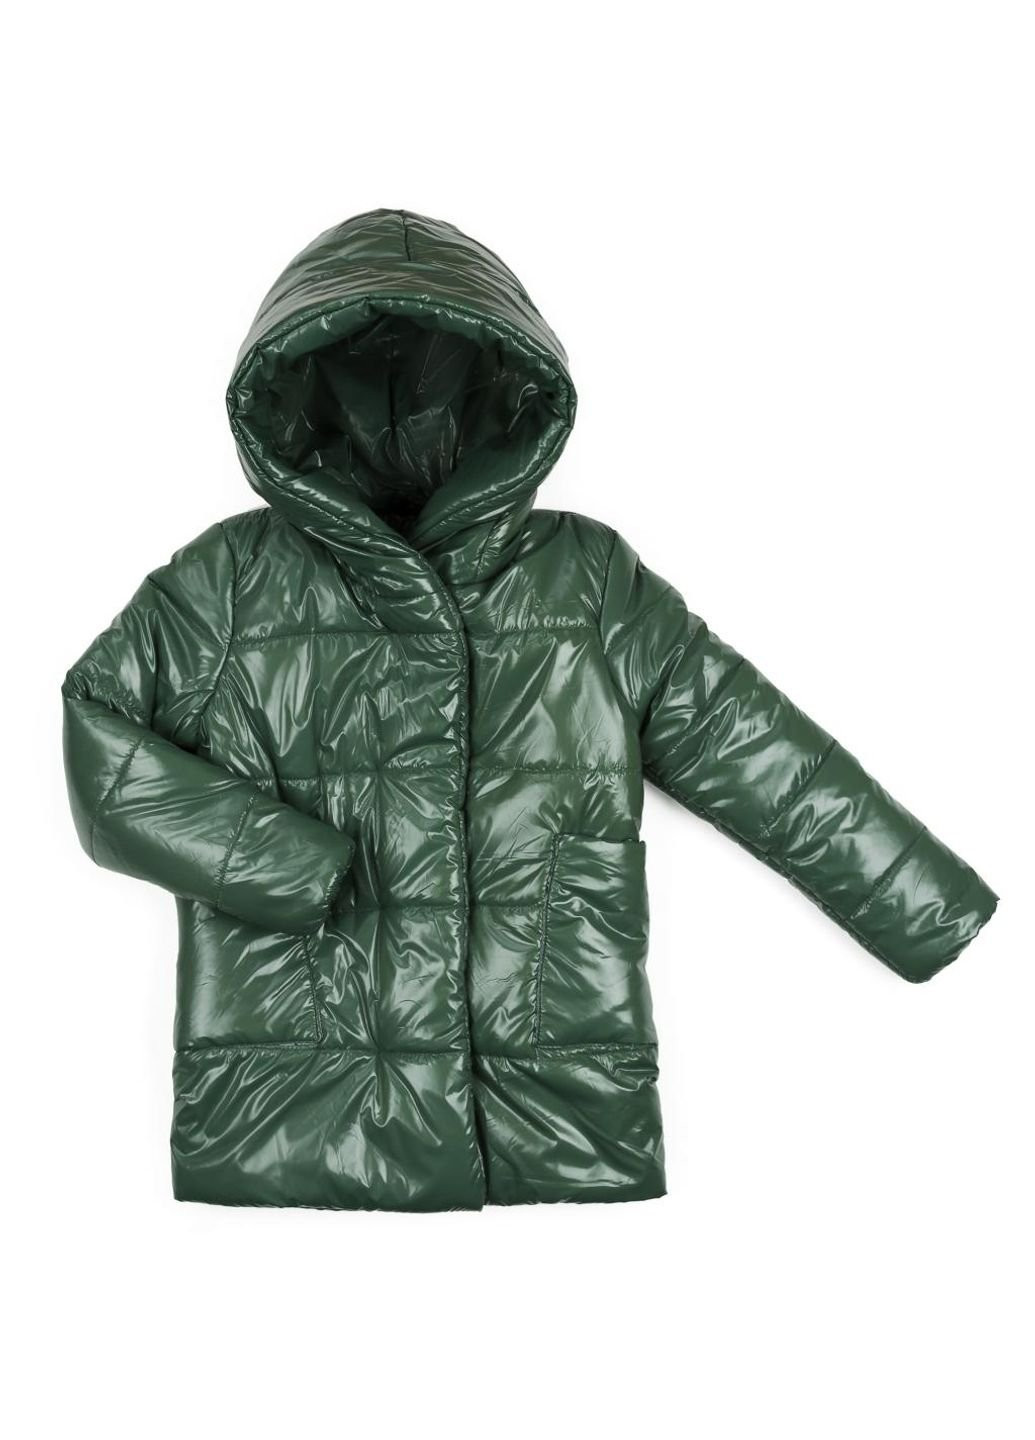 Оливковая демисезонная куртка удлиненная "felice" (19709-110-green) Brilliant